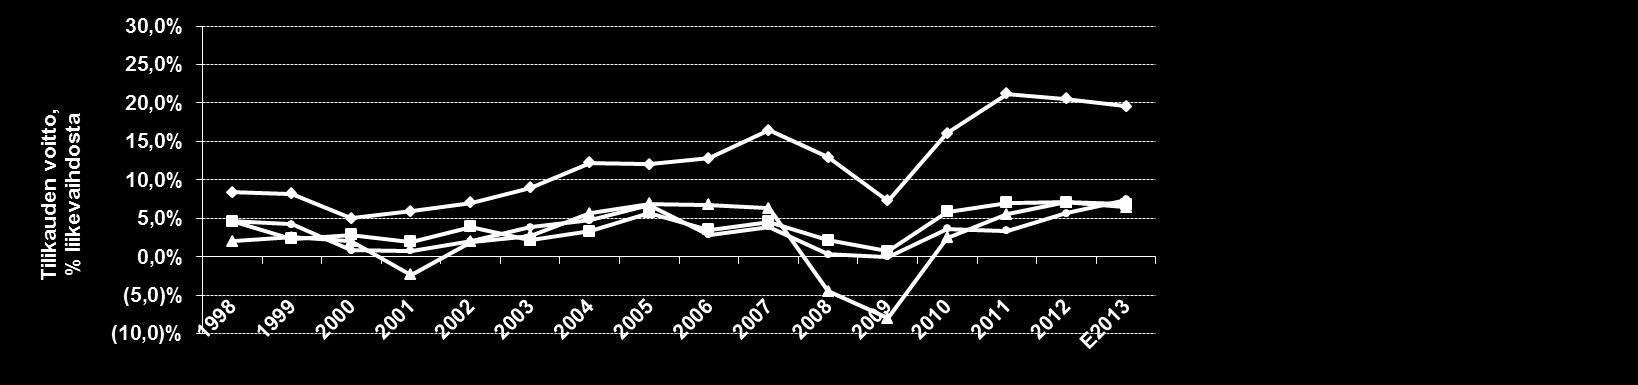 LIITE Kilpailijavertailu 1998-E2013: Nokian Renkaat kannattavin rengasvalmistaja Nokian Renkaiden kasvu ja kannattavuus ovat olleet selvästi pääkilpailijoita parempia viimeisen 15 vuoden aikana.